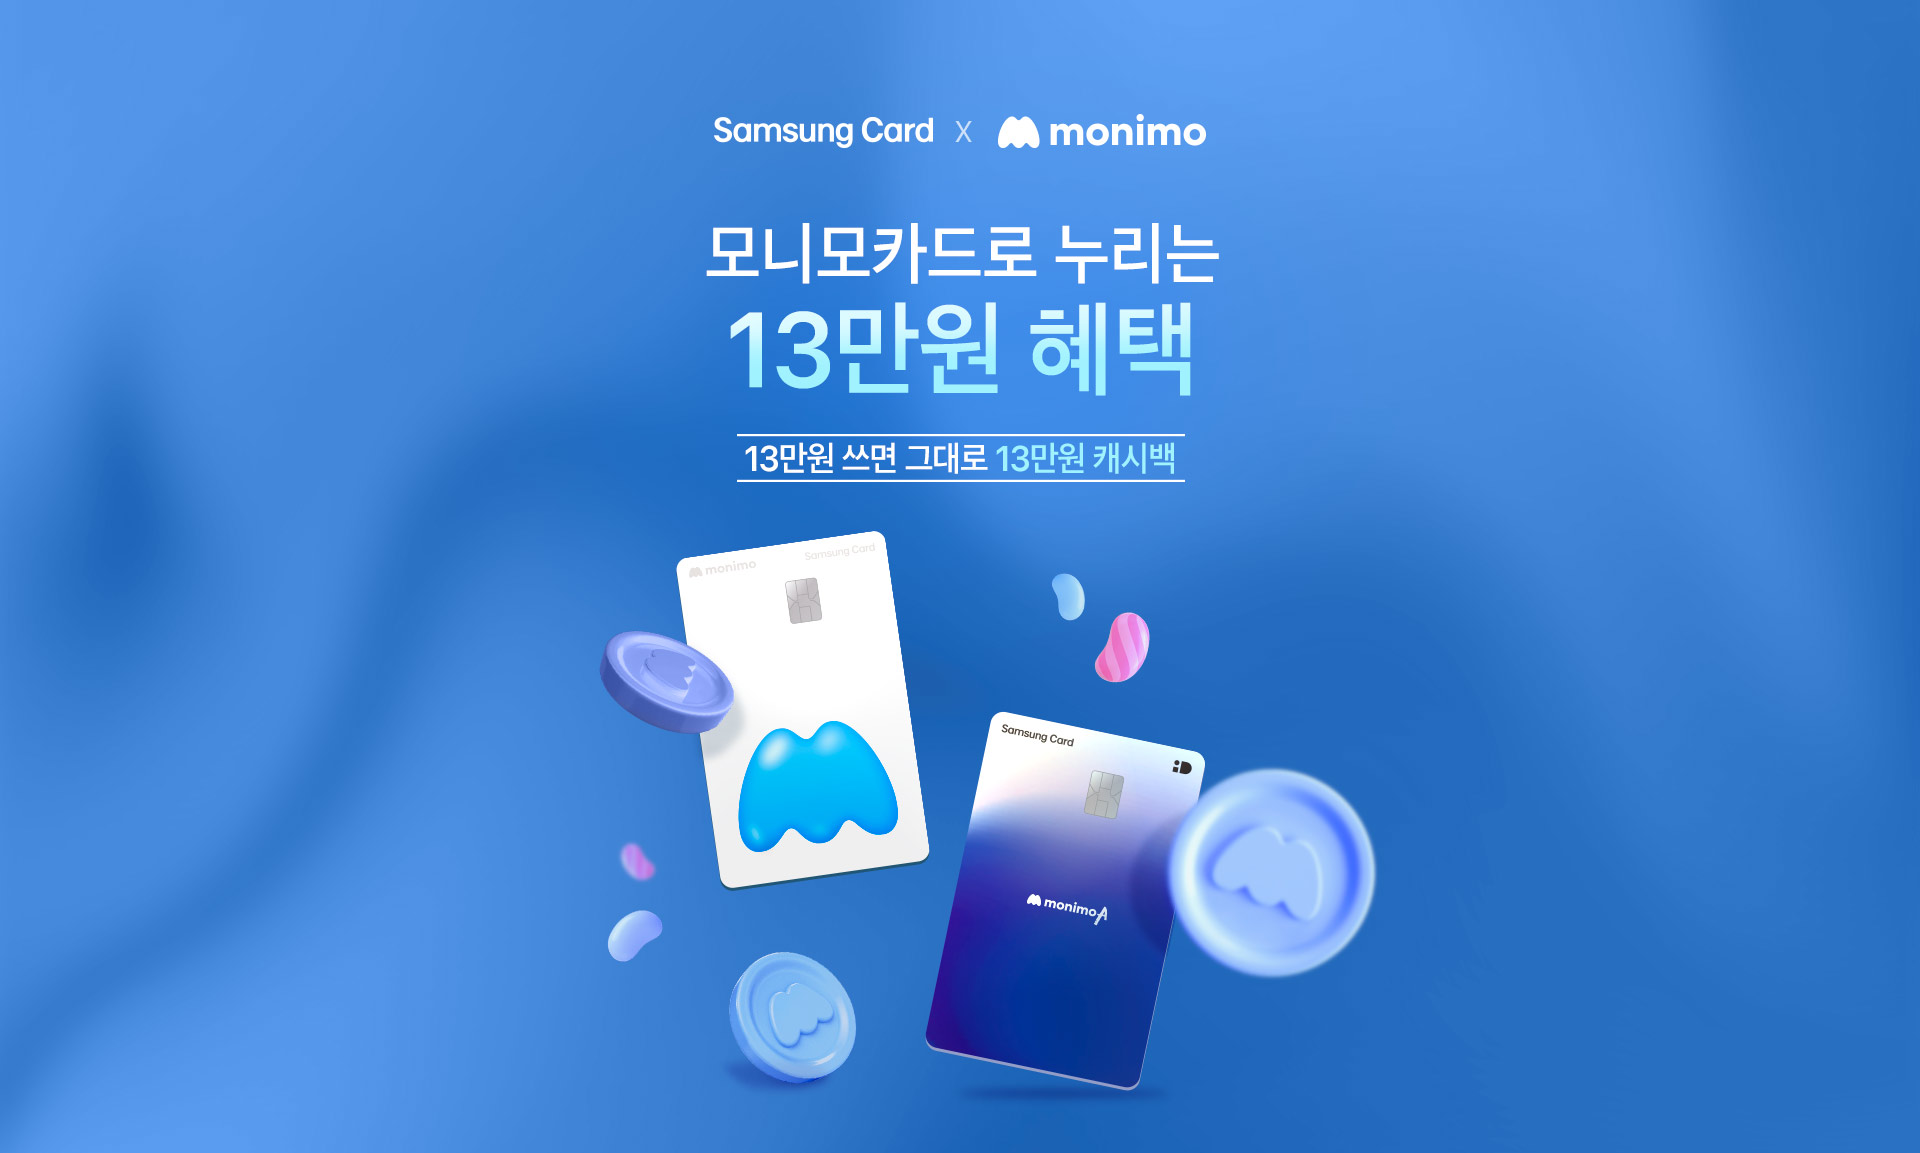 Samsung Card x monimo 최대 15만원 혜택 10만원 쓰면 그대로 10만원 모니모 챌린지로 최대 5만원 더!